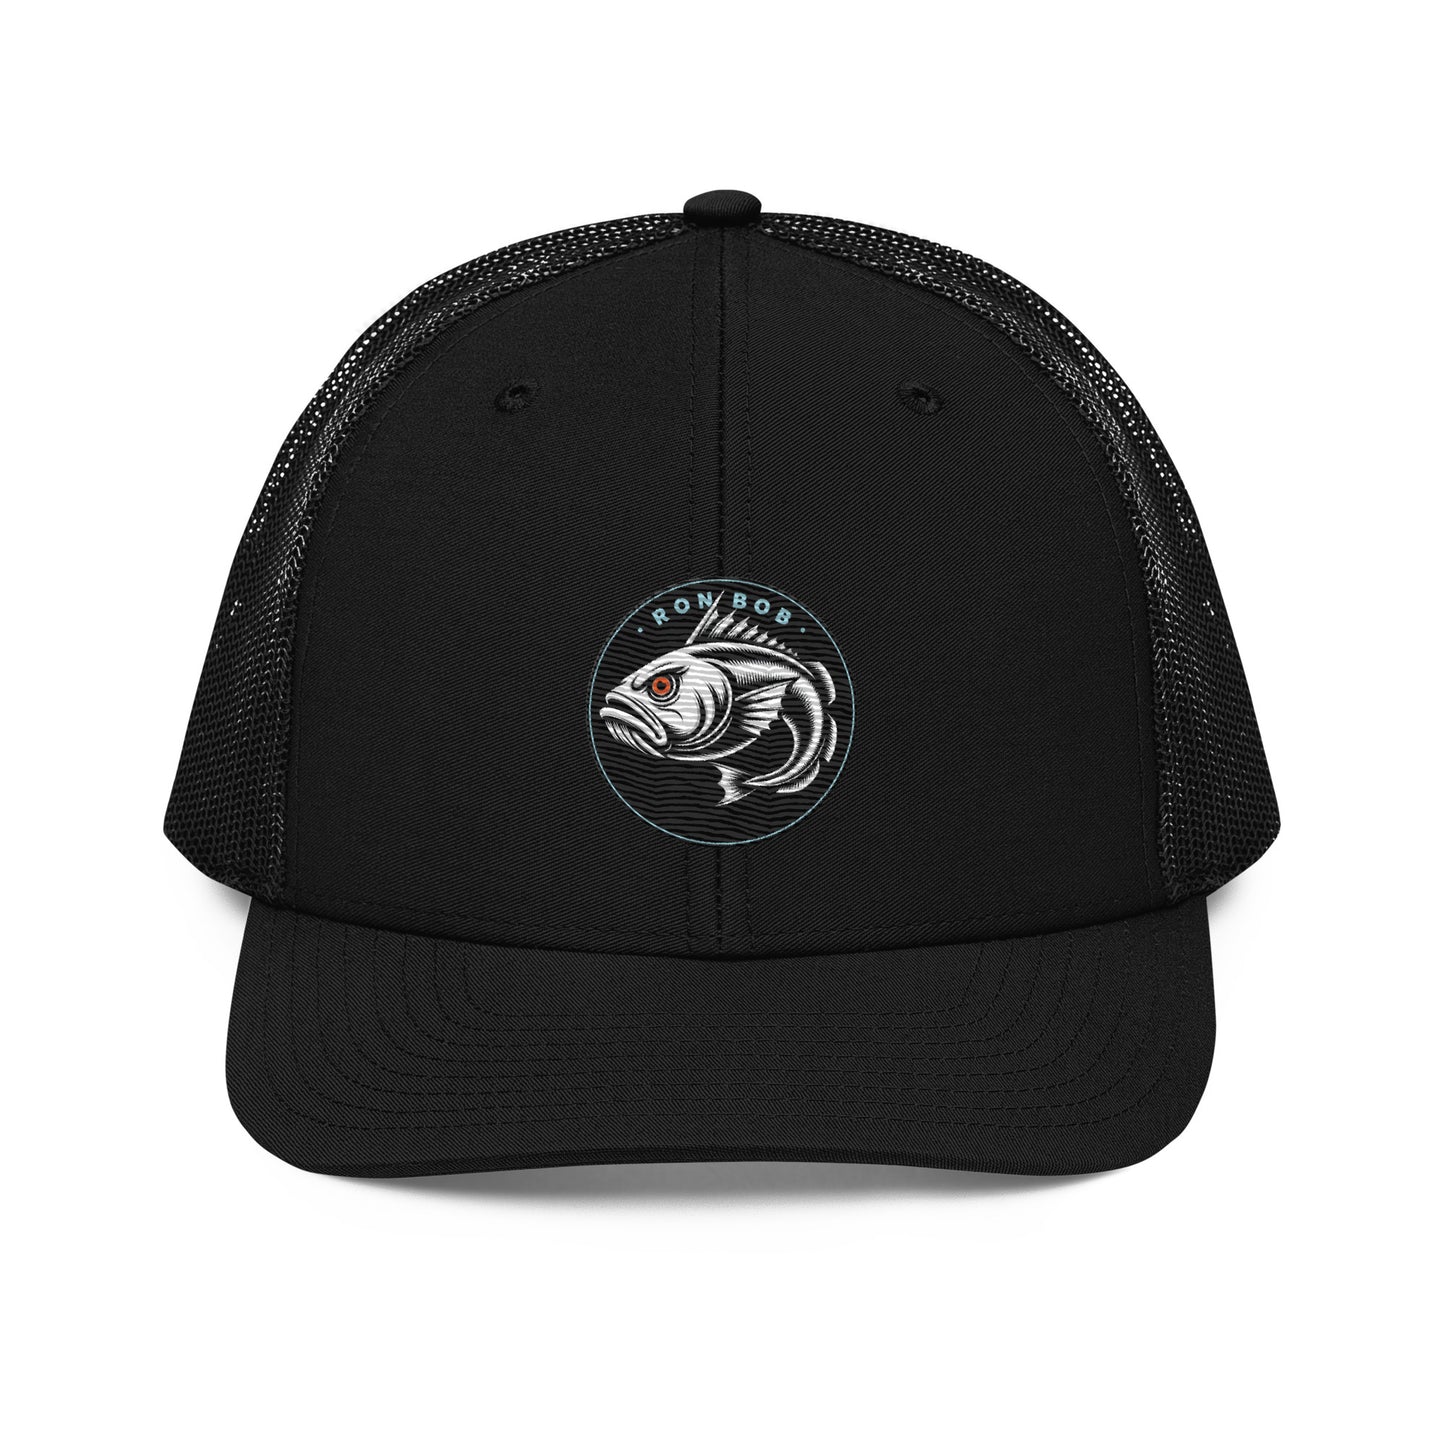 Lingcod Fishing Hat - Richardson 112